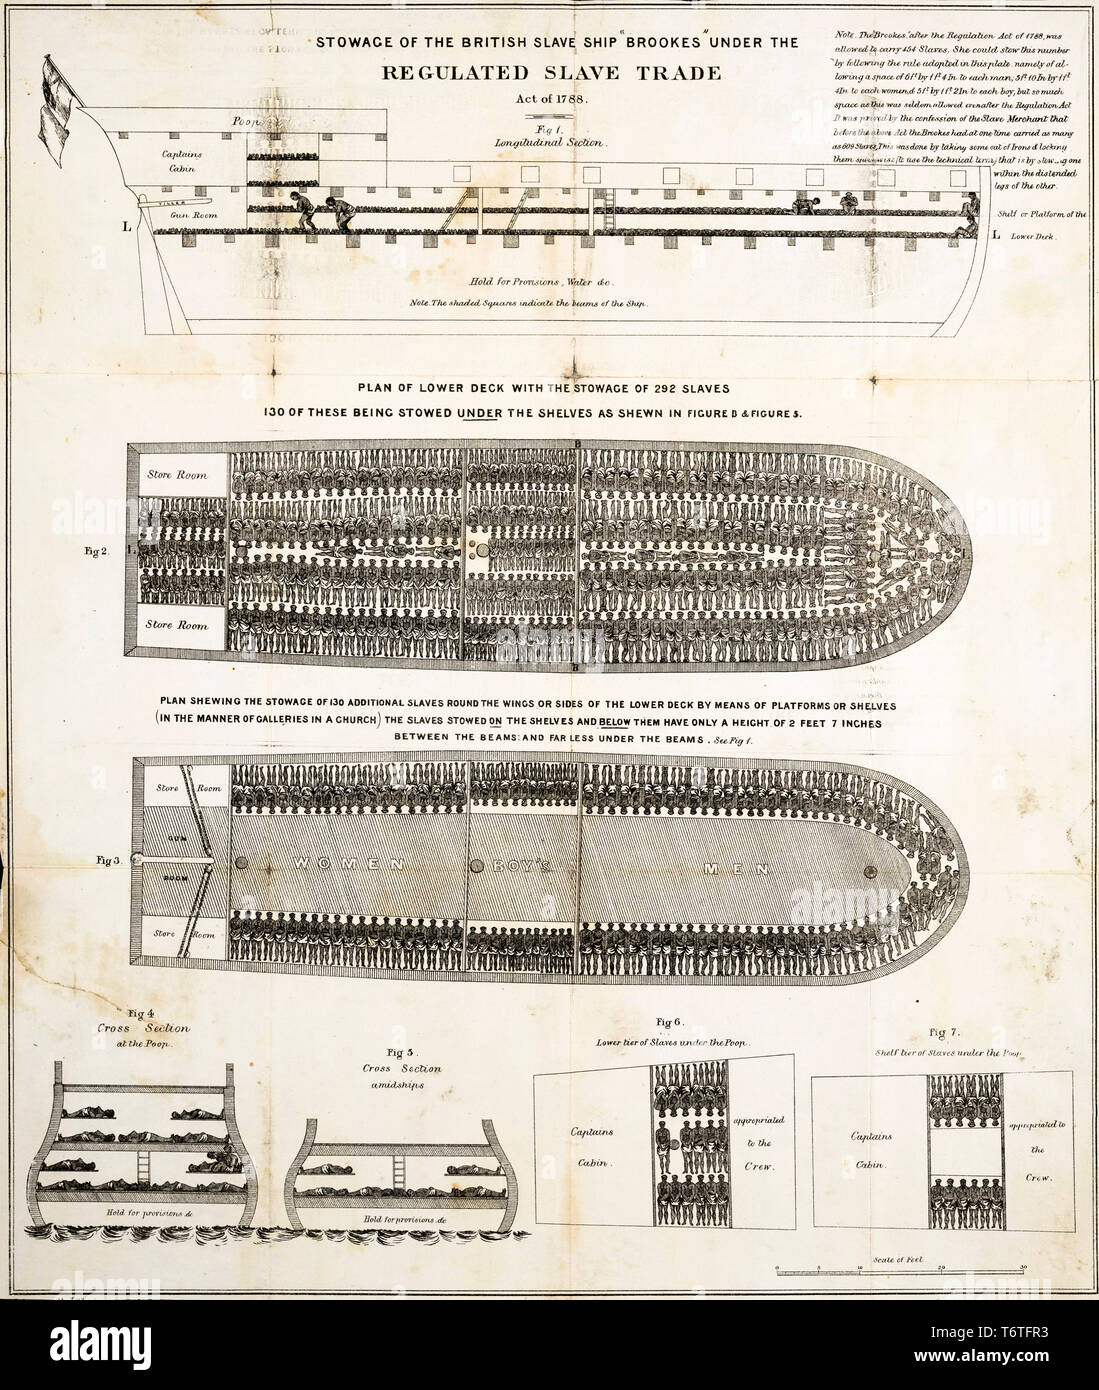 L'arrimage d'esclaves diagramme de la British navire négrier Brookes en vertu de la Loi sur la réglementation des esclaves de 1788, 1788 Banque D'Images